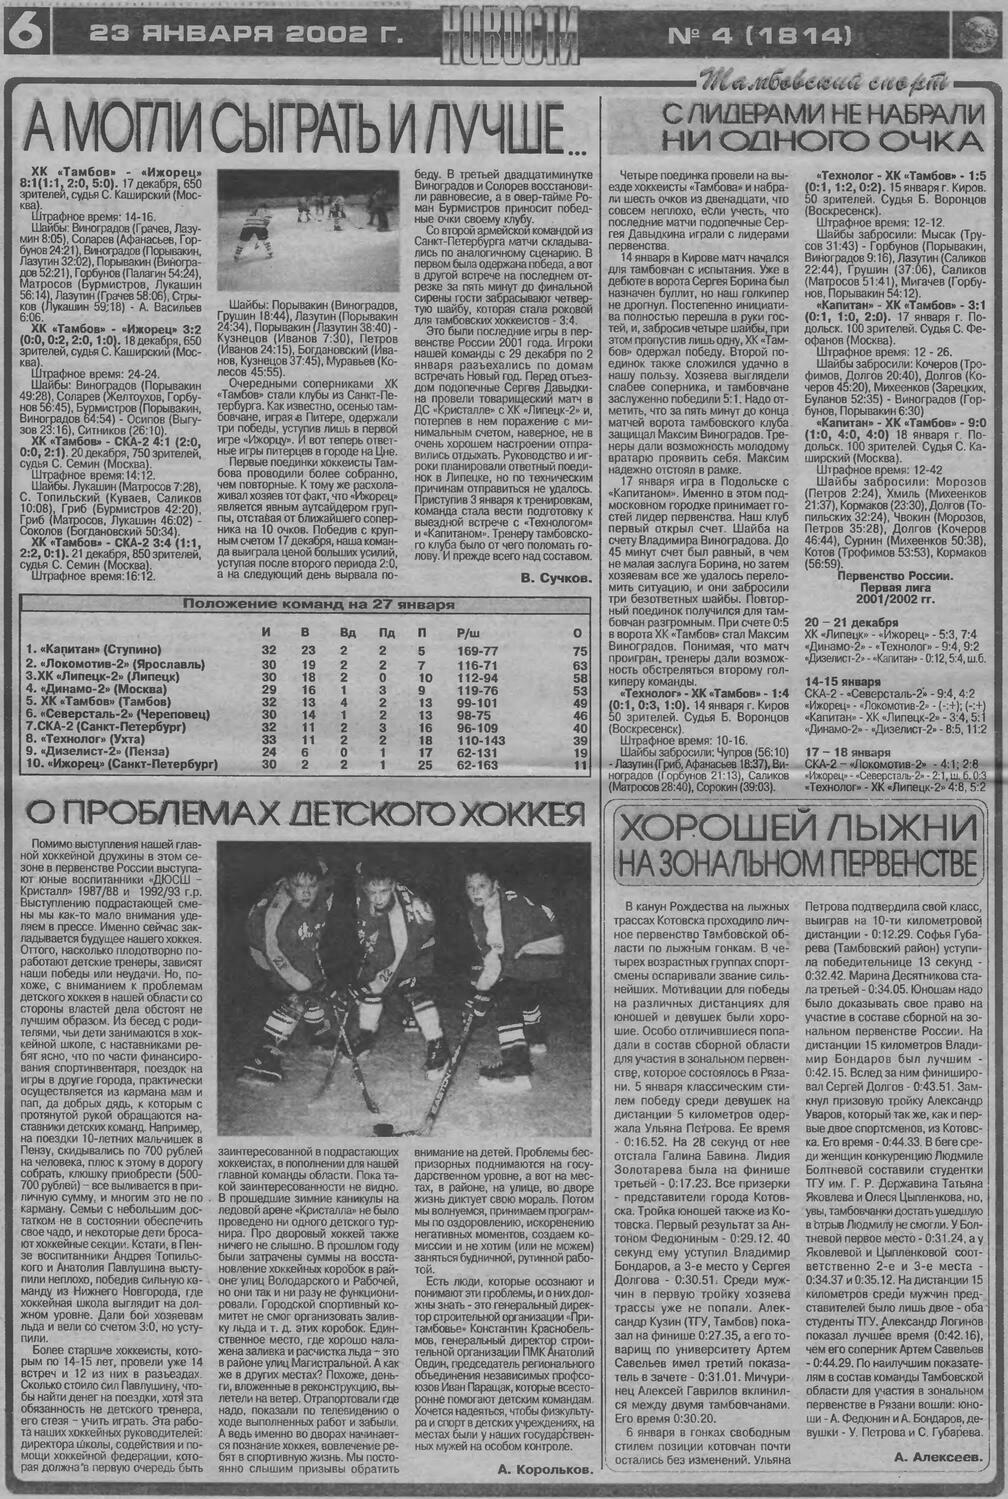 Газета "Новости. Тамбовский спорт" №1814 от 23.01.2002г.